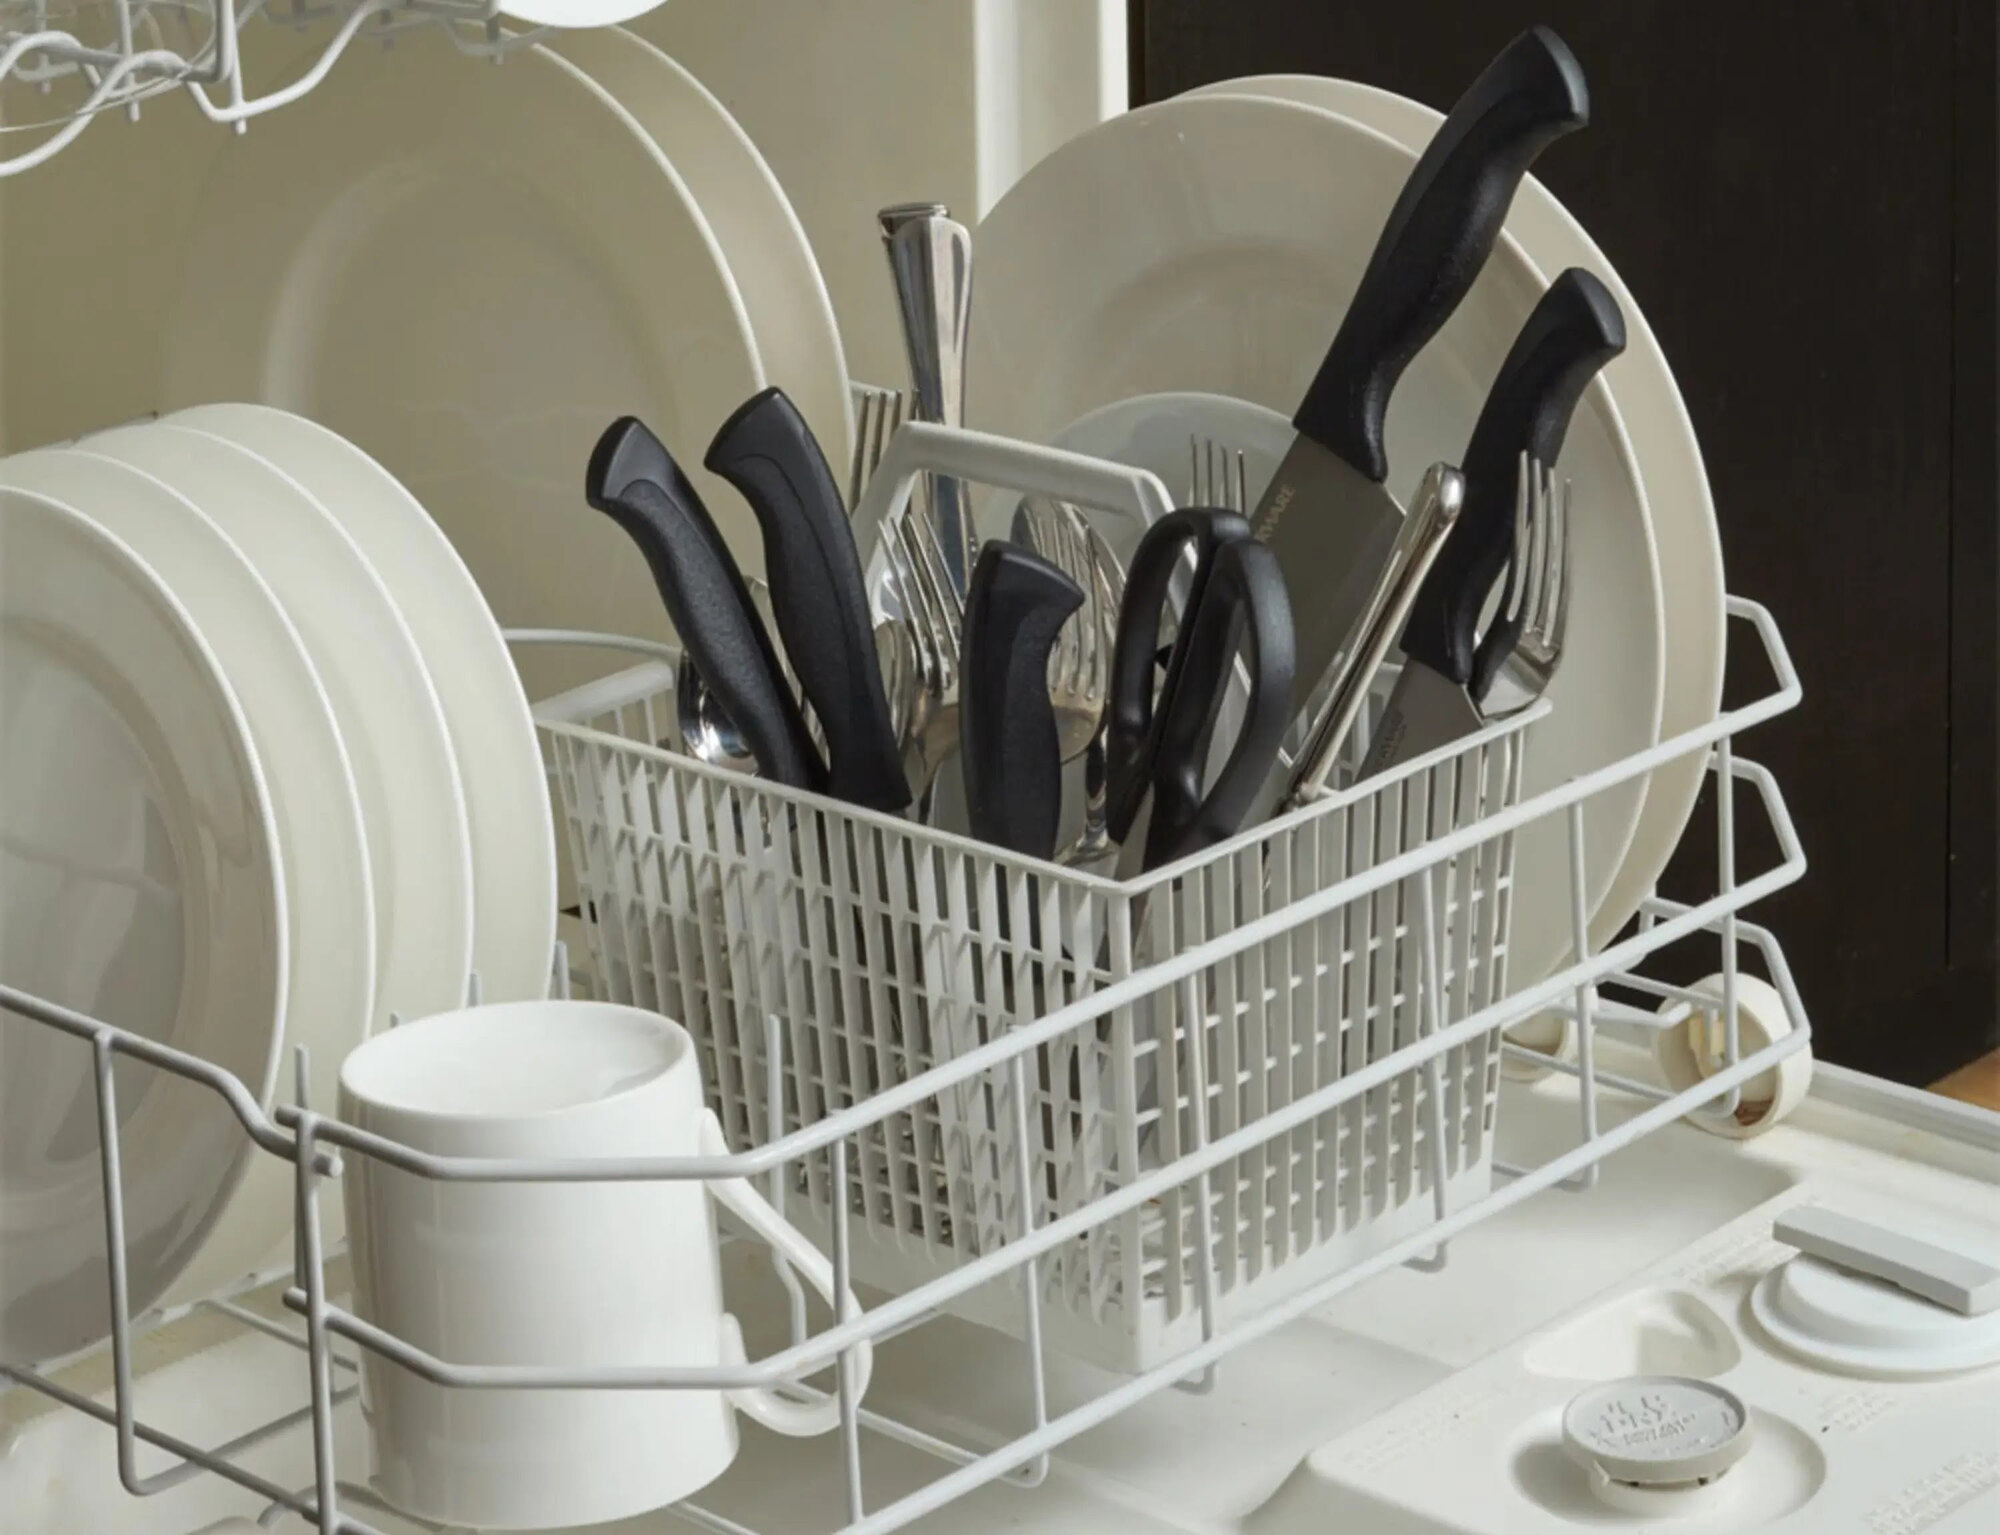 5 Amazing Kitchen Knife Set Dishwasher Safe For 2023 1689298287 